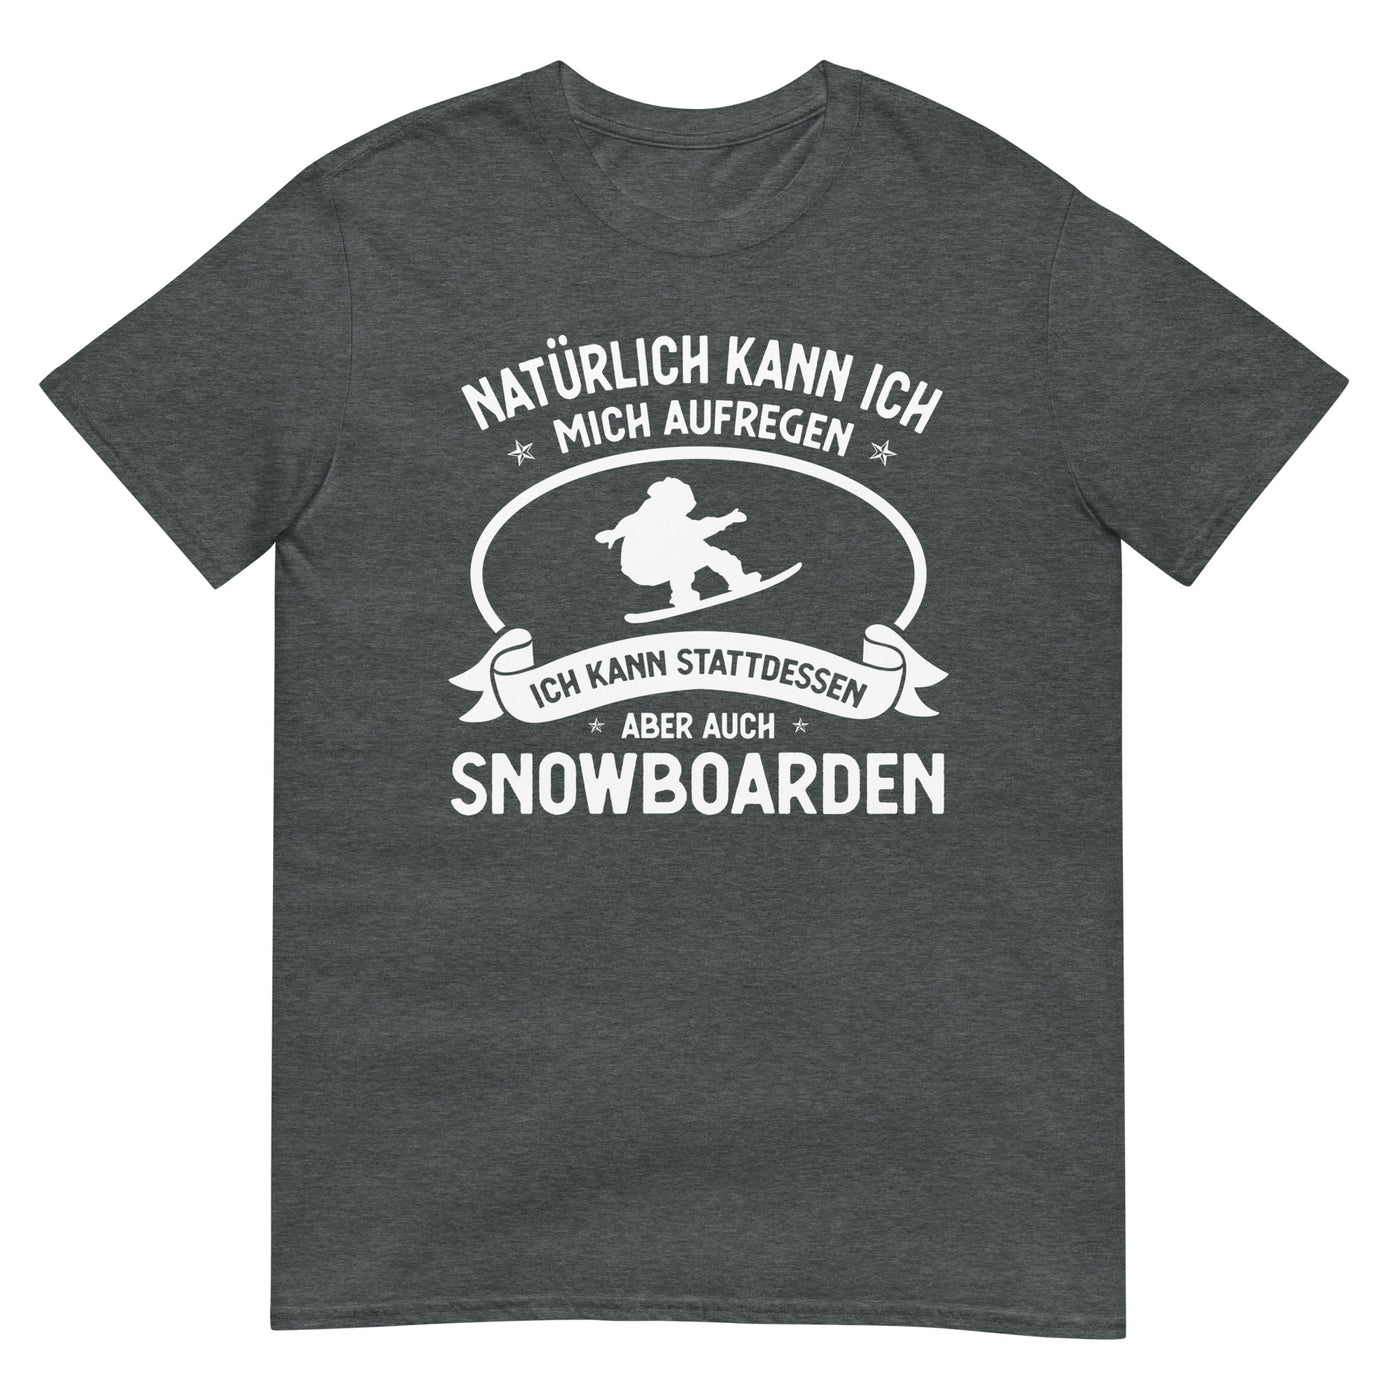 Naturlich Kann Ich Mich Aufregen Ich Kann Stattdessen Aber Auch Snowboarden - T-Shirt (Unisex) snowboarden xxx yyy zzz Dark Heather